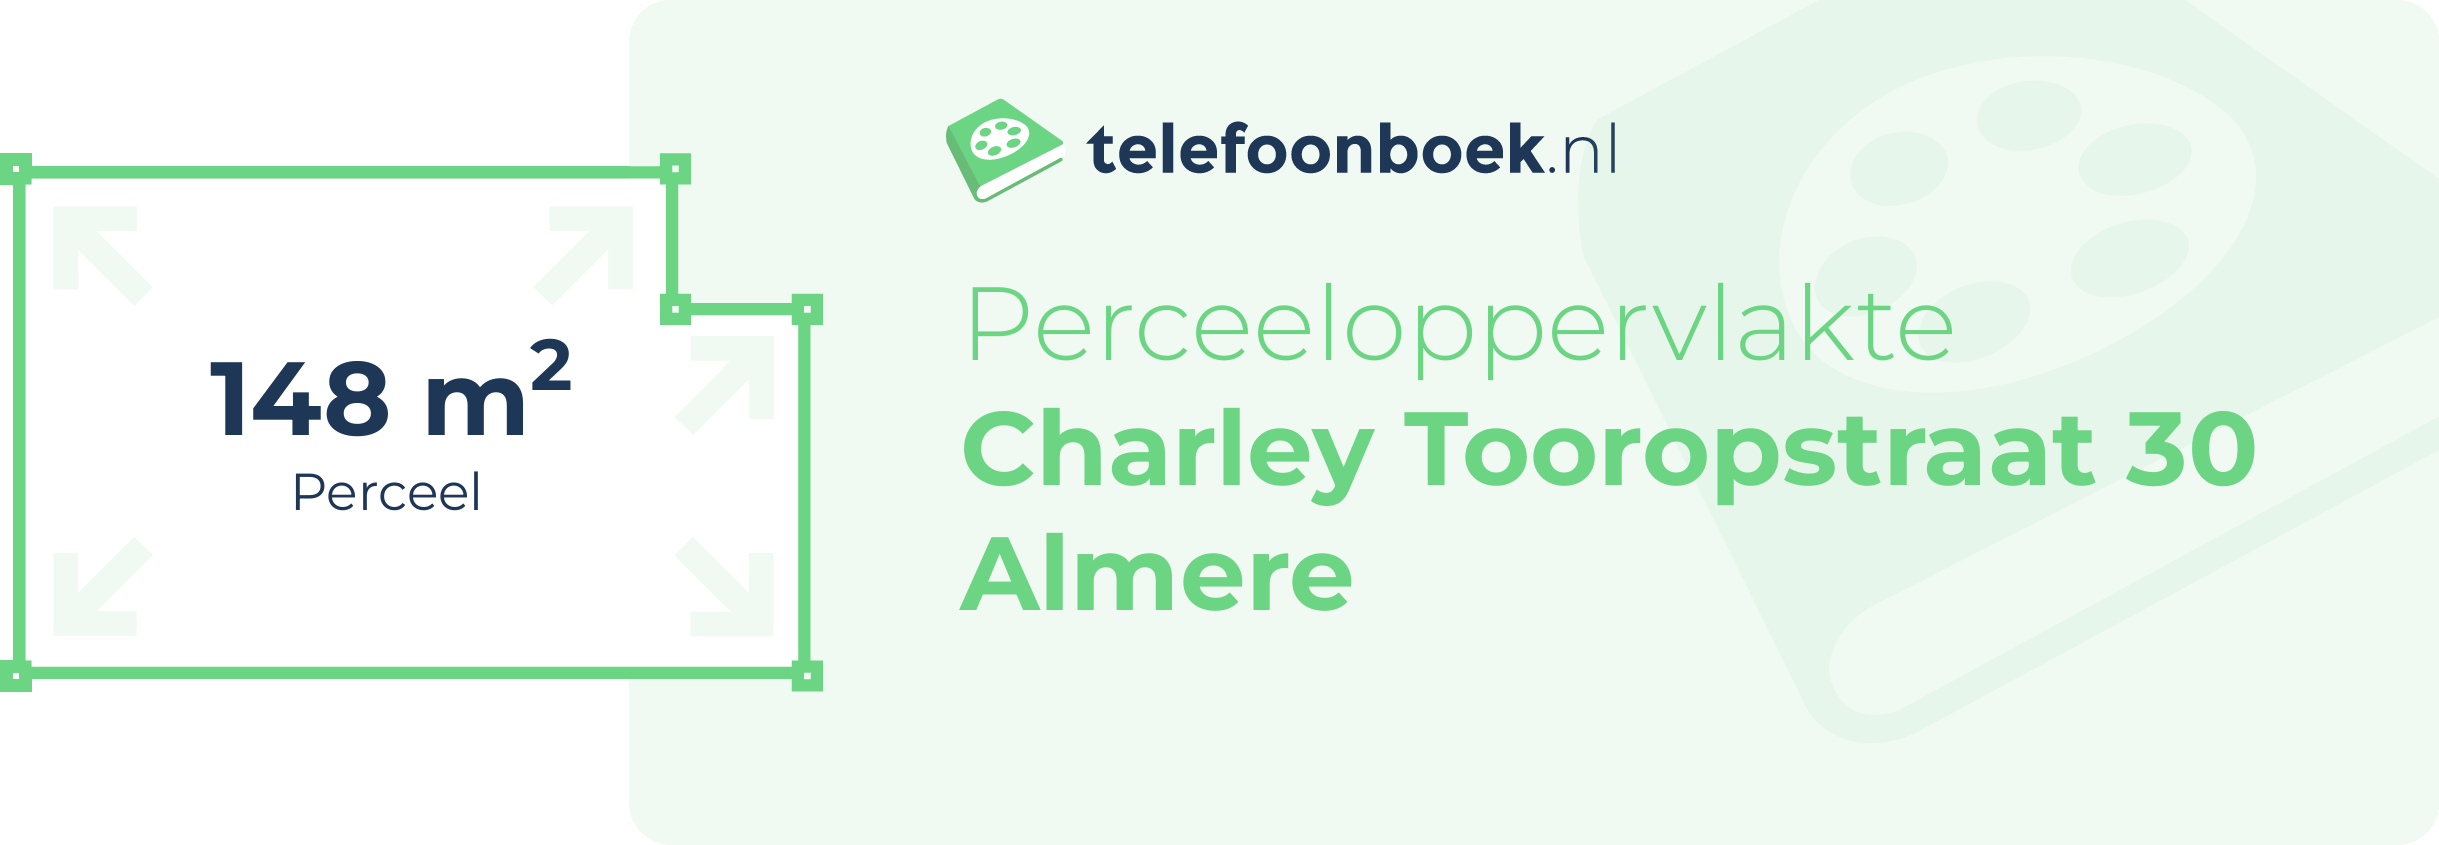 Perceeloppervlakte Charley Tooropstraat 30 Almere